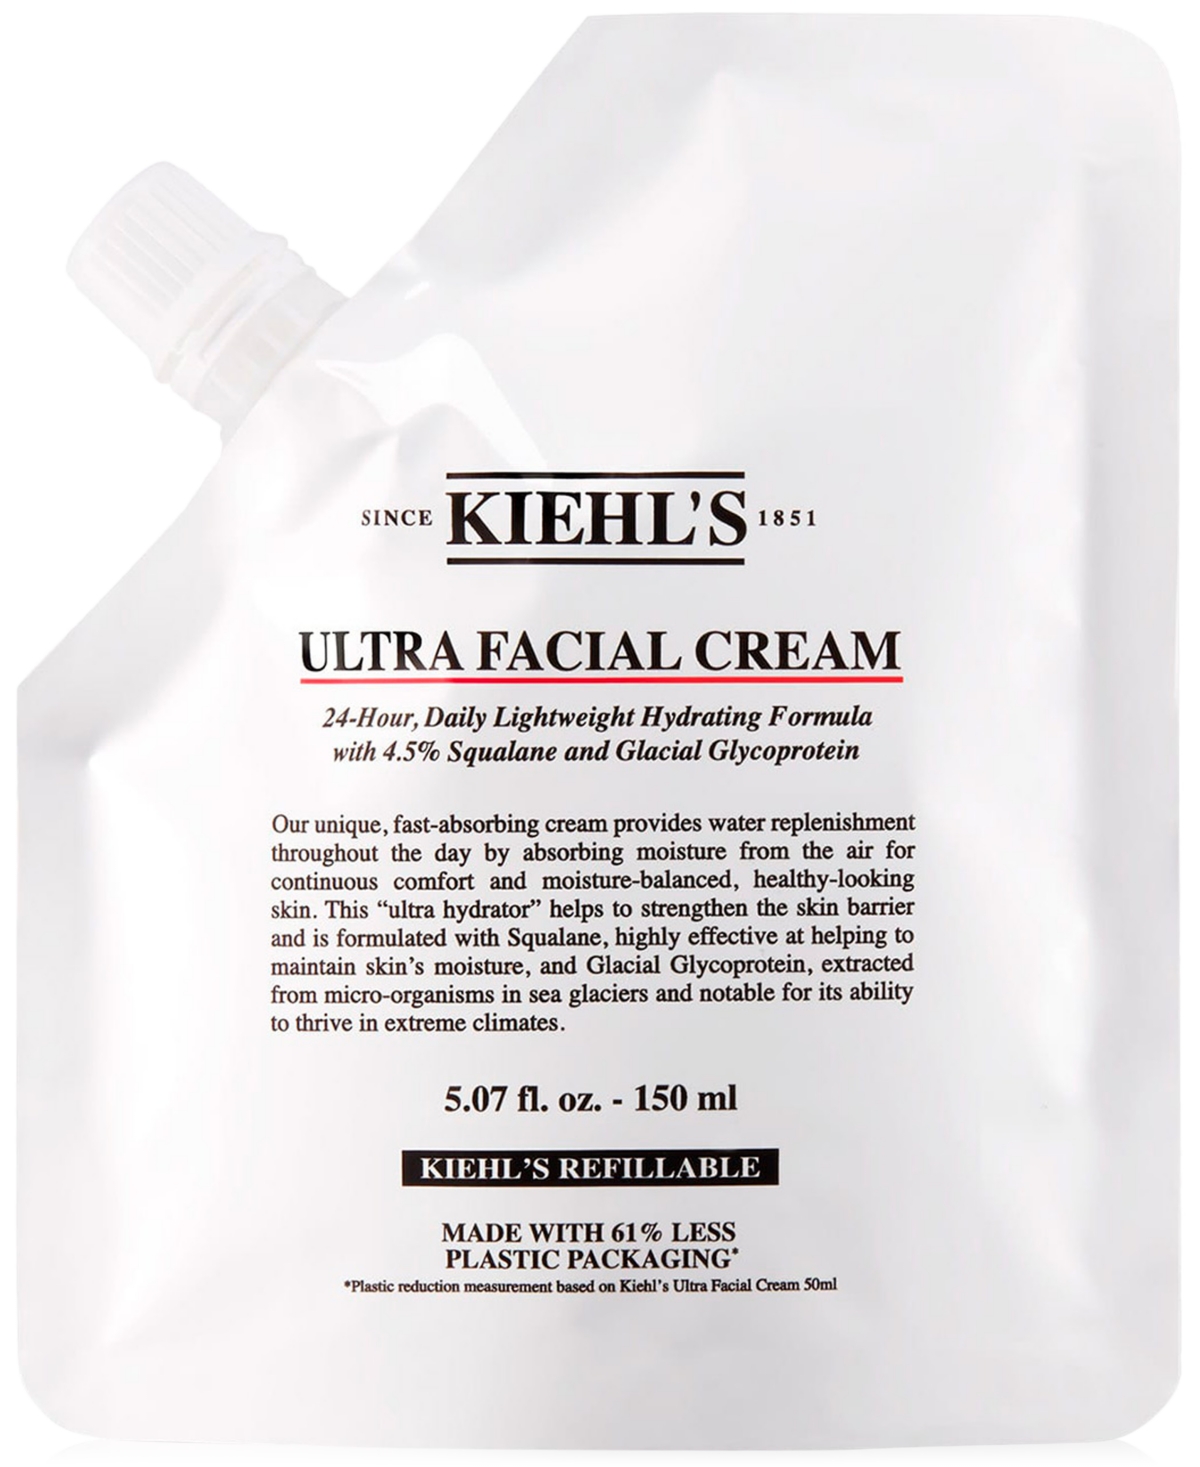 Ultra Facial Cream Refill Pouch, 5.07 oz.